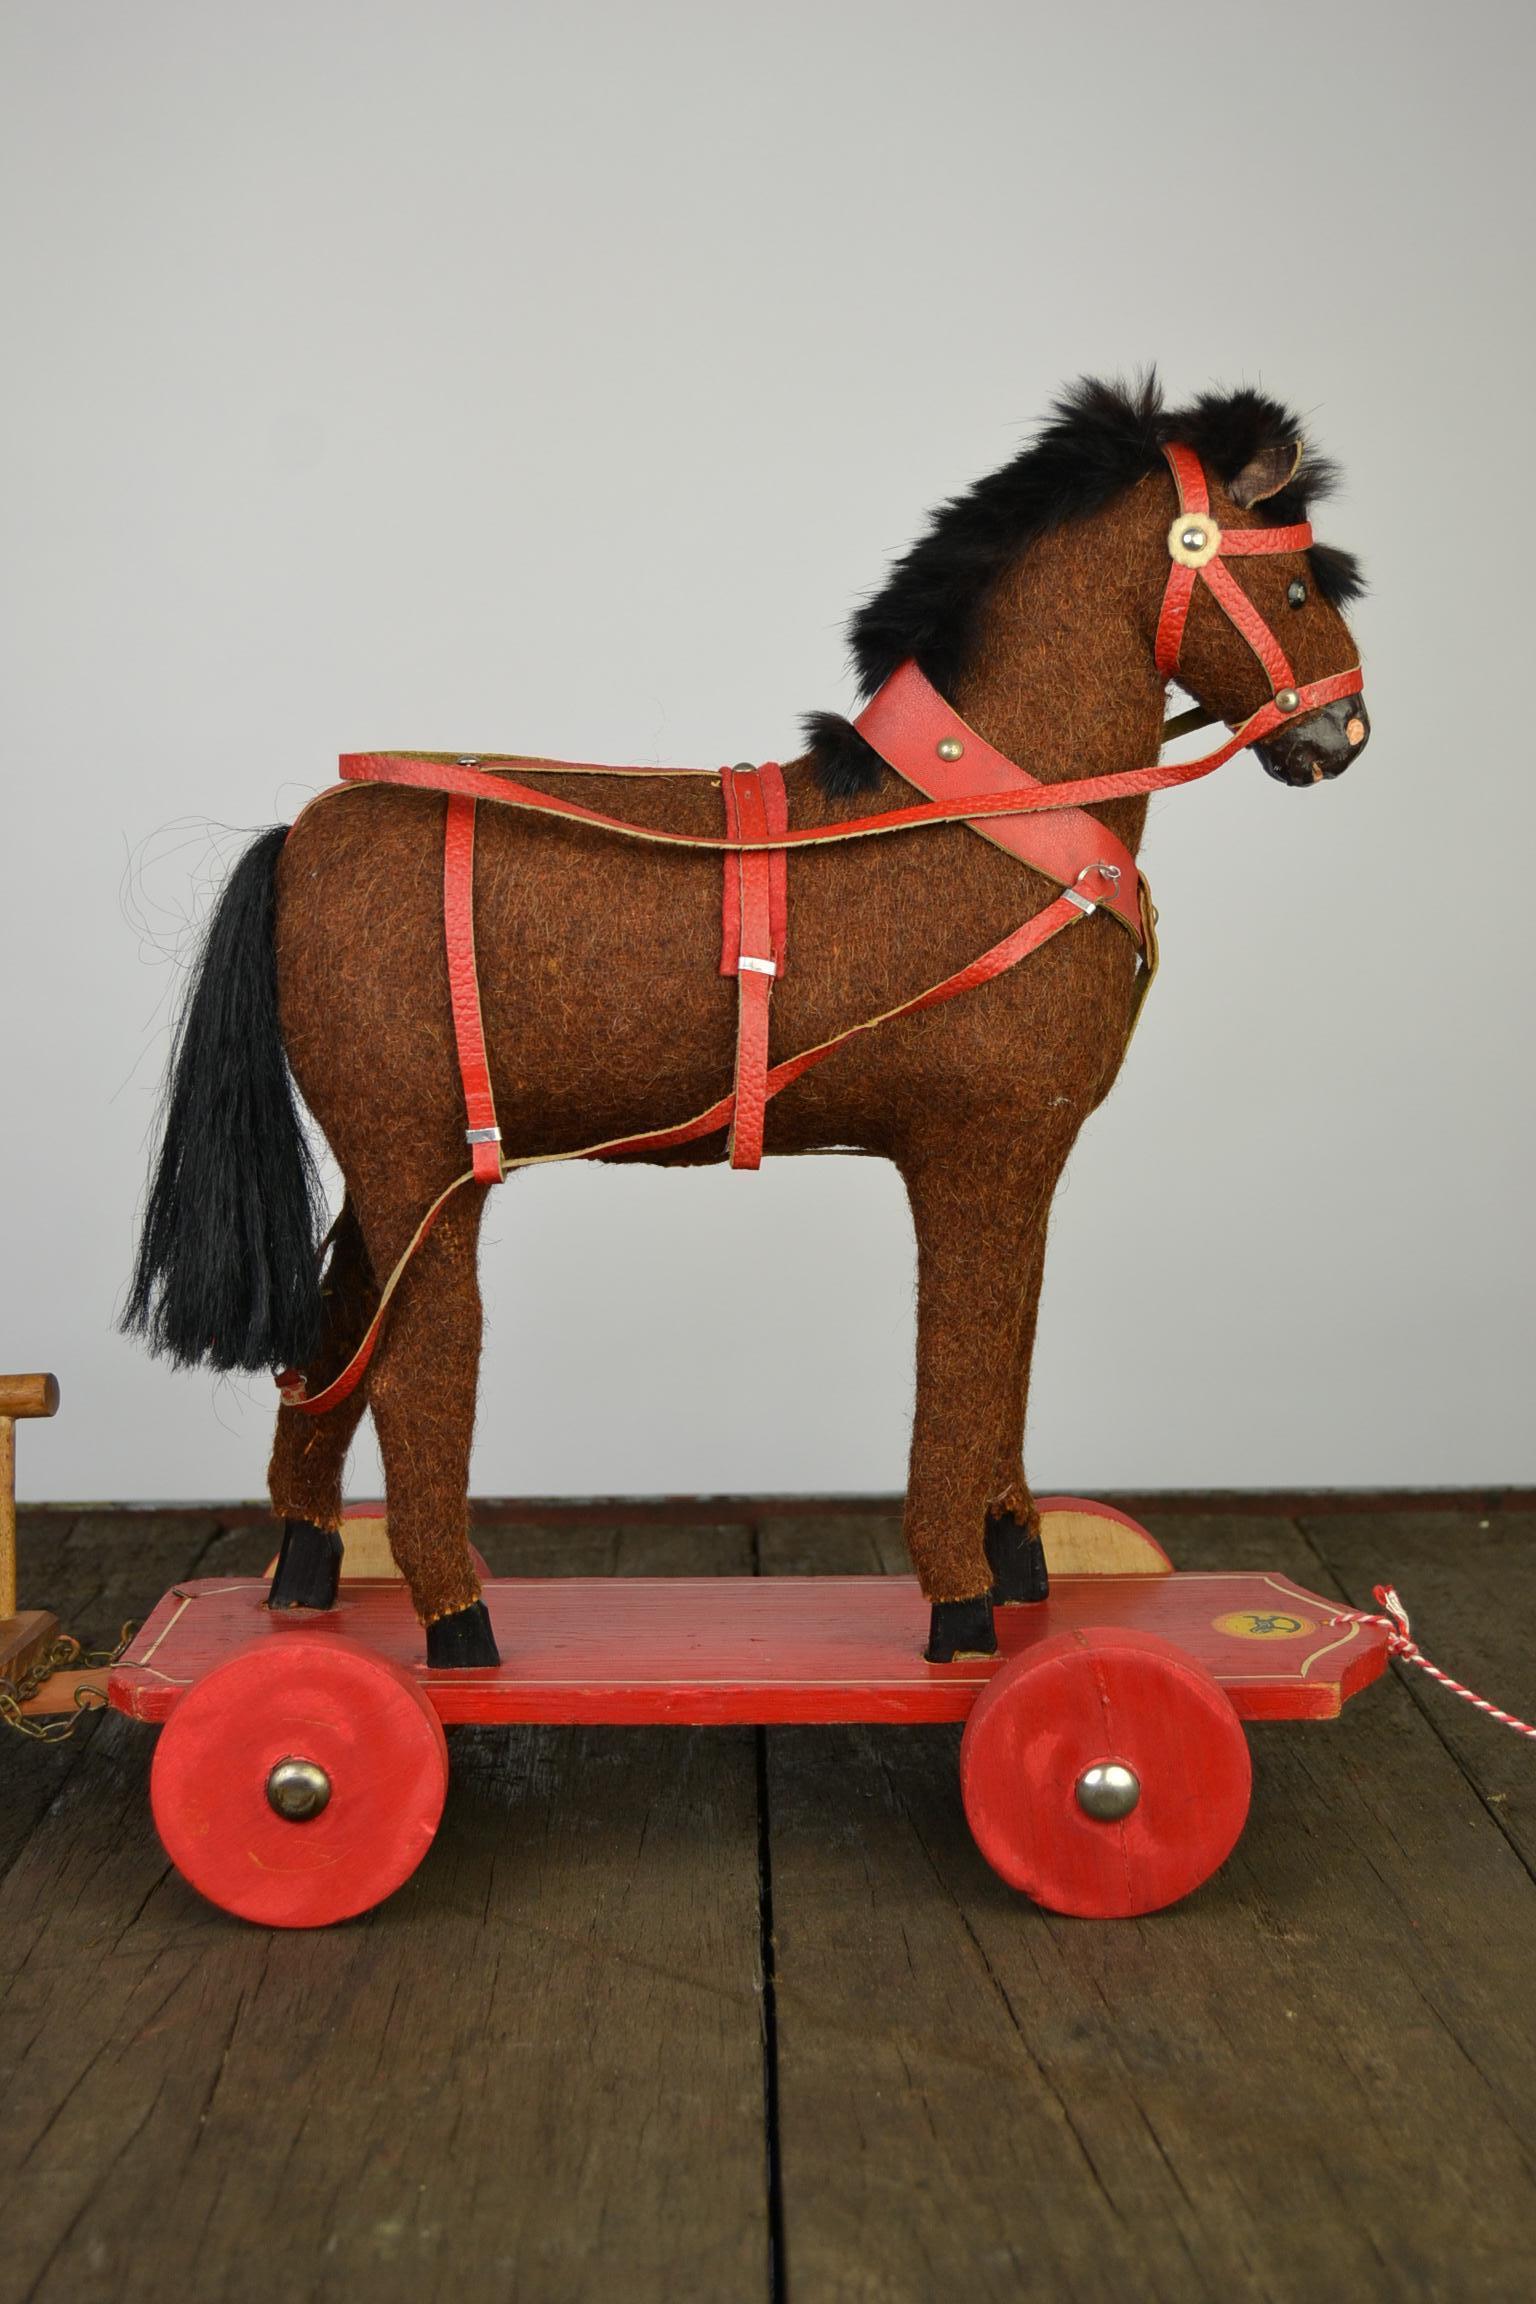 Magnifique Roy allemand ancien,
un jouet à tirer, un jouet de cheval à tirer avec un chariot.
Ce cheval jouet antique, datant des années 1930, est monté sur une plate-forme en bois munie de roues. Le cheval en bois sculpté est recouvert d'une